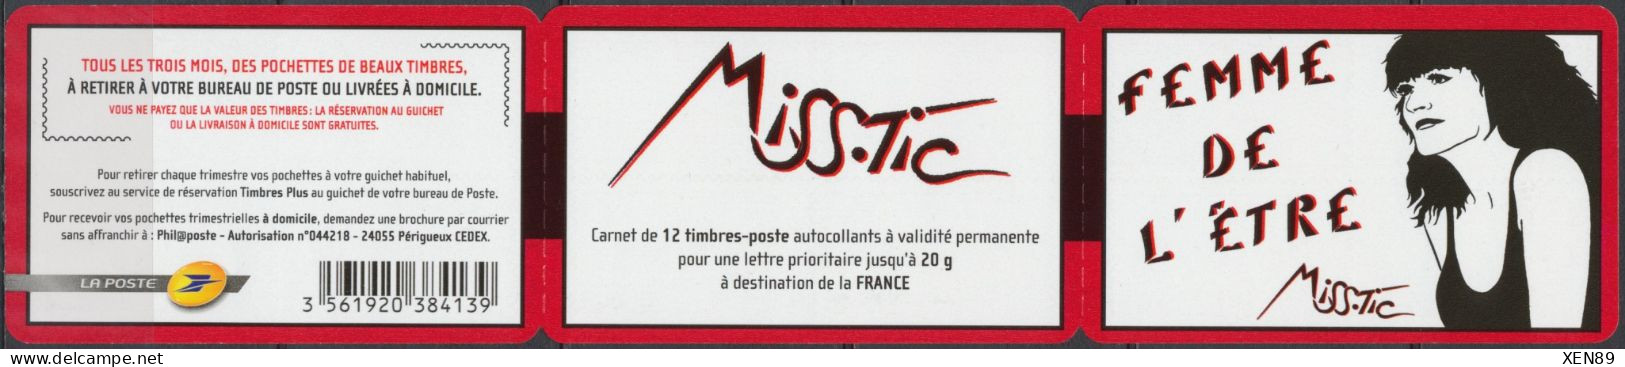 2011 - C 538 Neuf ** - "Femme De L'être", De Miss. Tic (1956-), Artiste Plasticienne De "Street Art" - Neufs